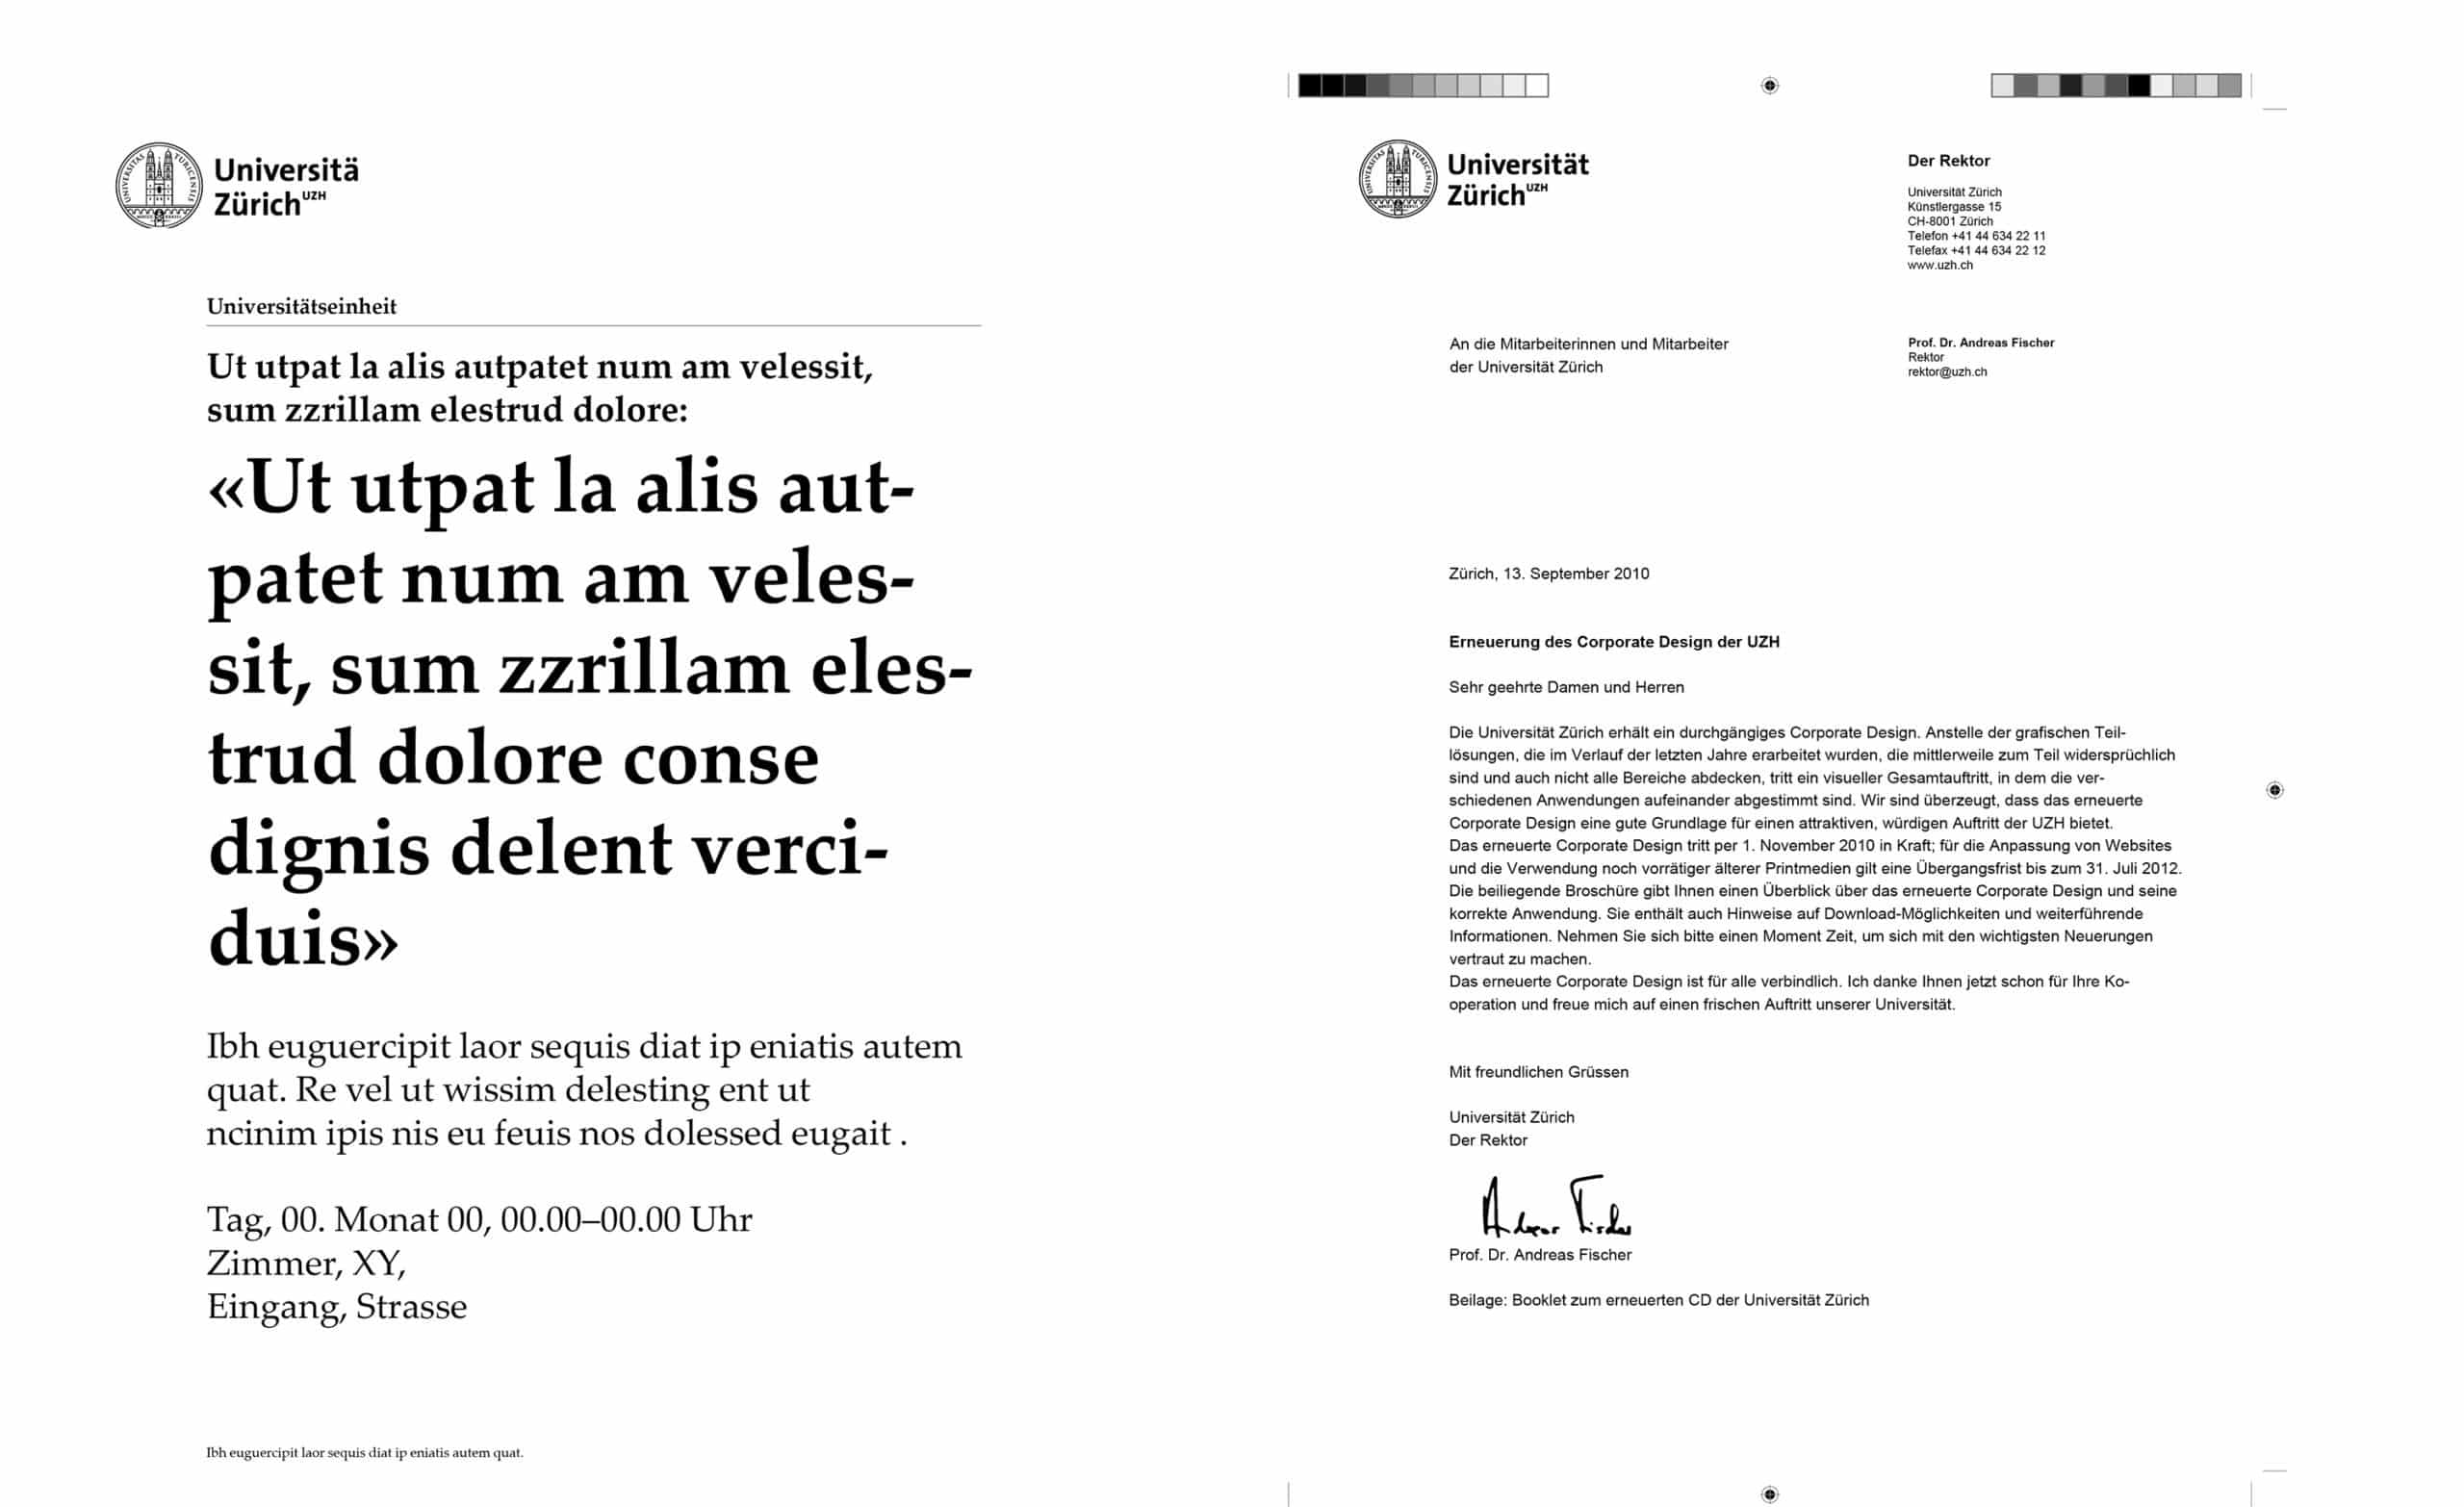 20 TBS UZH Universitaet Zuerich Briefschaft Anzeige Brief scaled